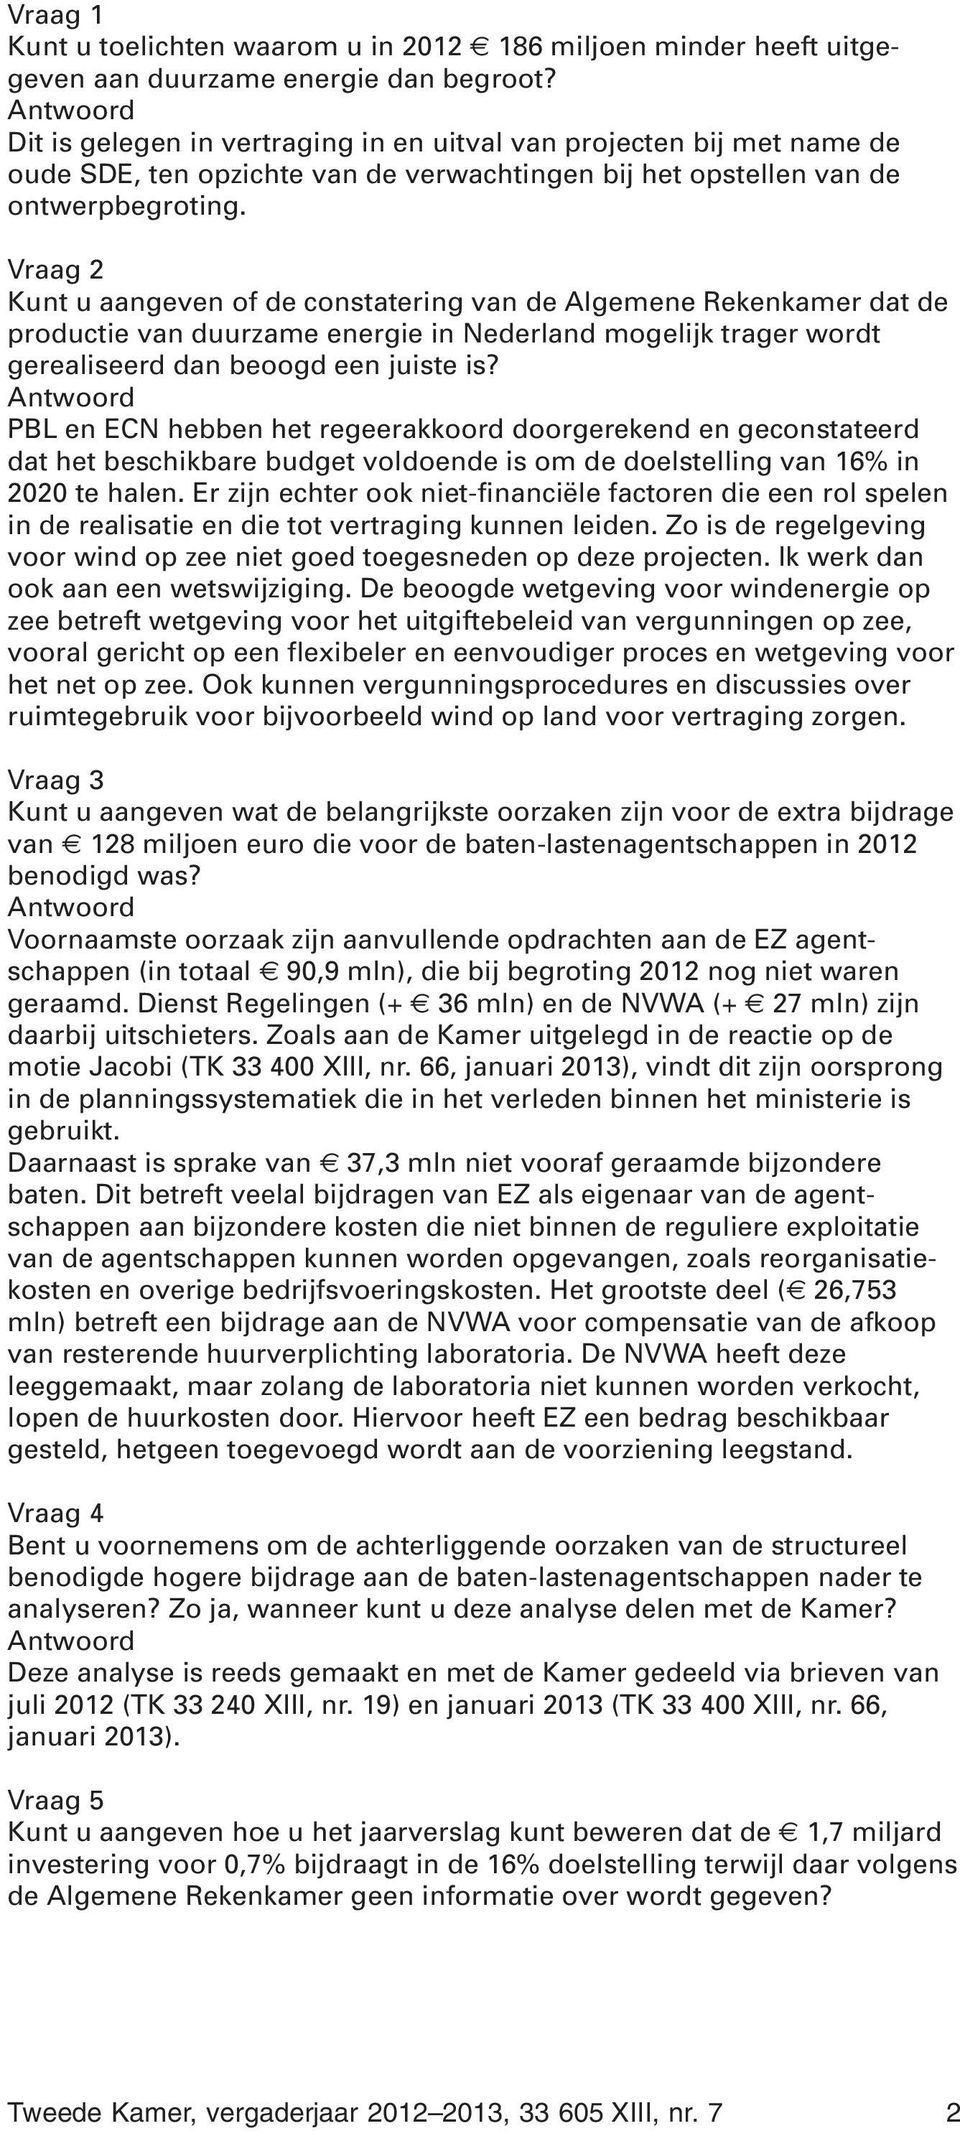 Vraag 2 Kunt u aangeven of de constatering van de Algemene Rekenkamer dat de productie van duurzame energie in Nederland mogelijk trager wordt gerealiseerd dan beoogd een juiste is?